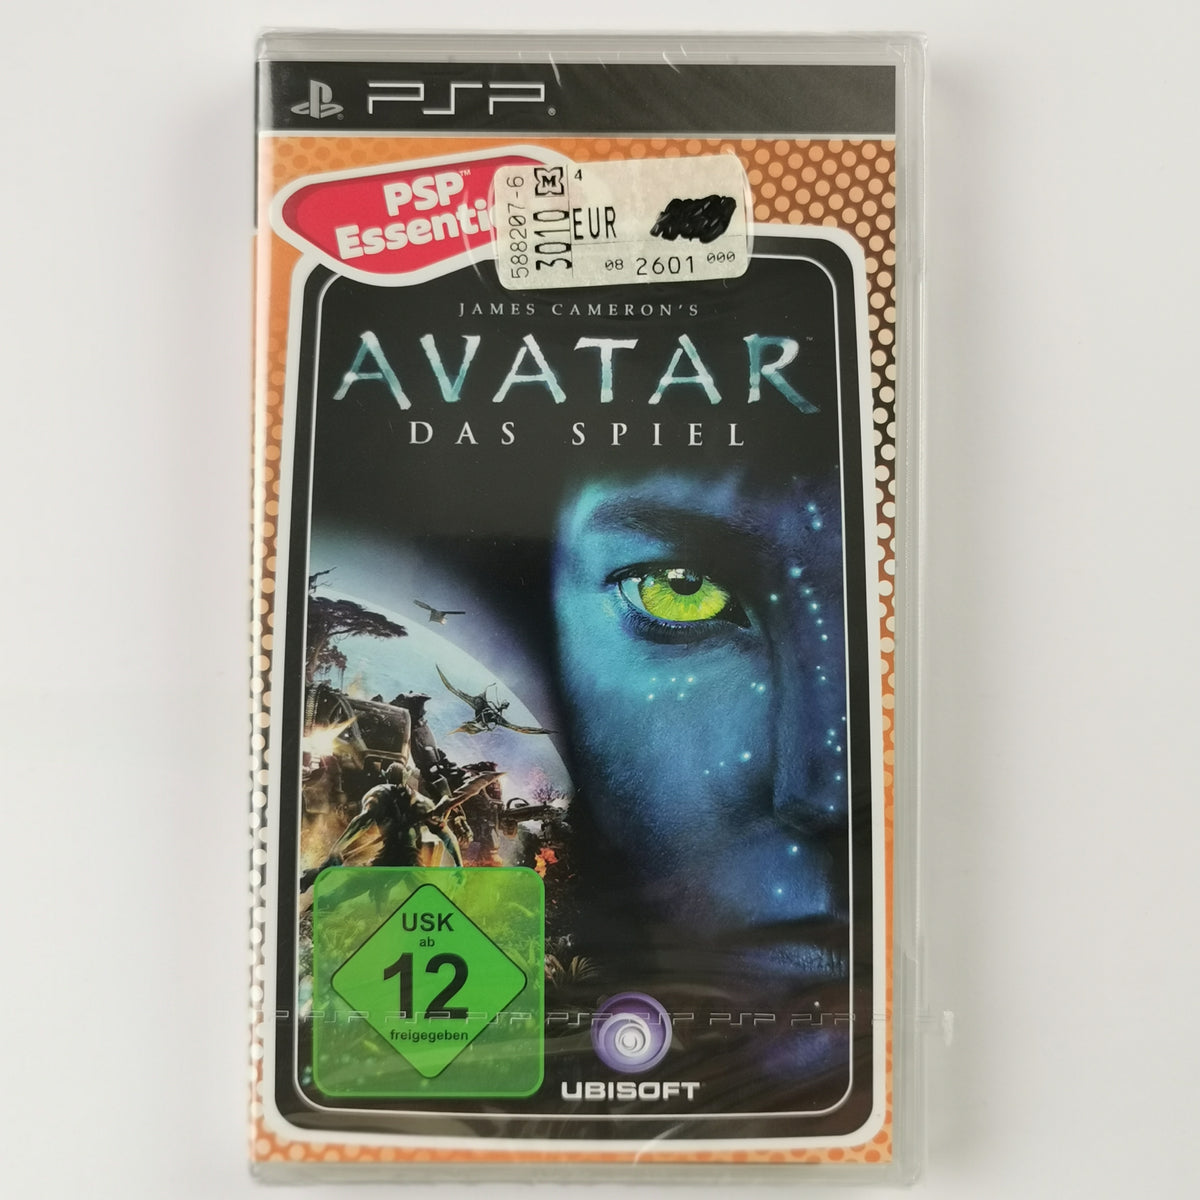 James Camerons Avatar: Das Spiel [PSP]